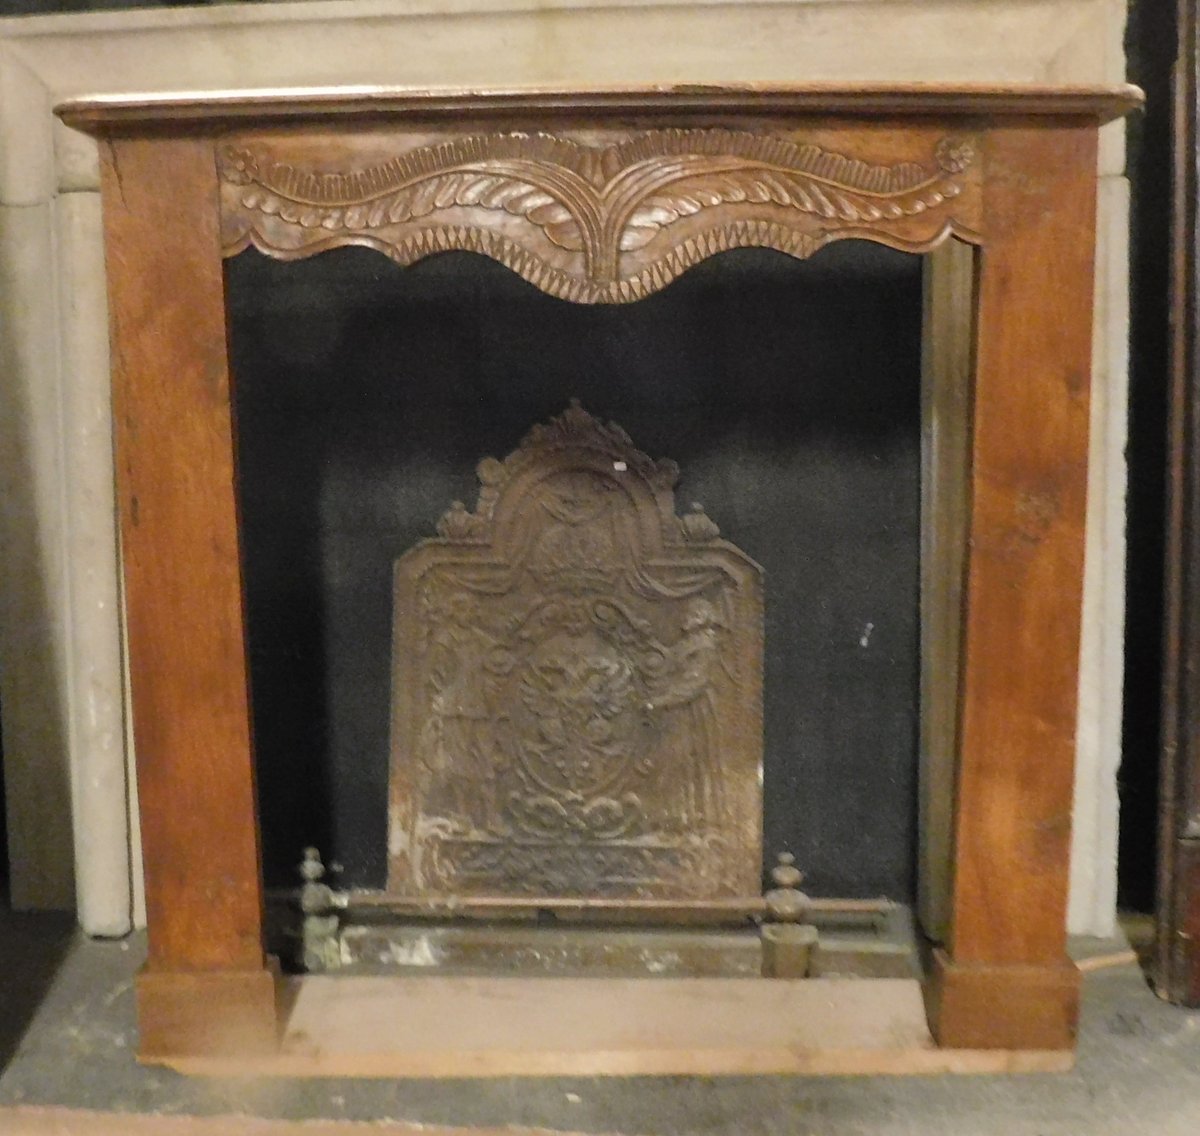 chl152 - walnut wood fireplace, 18th century, size cm w 118 x h 110 x d. 23